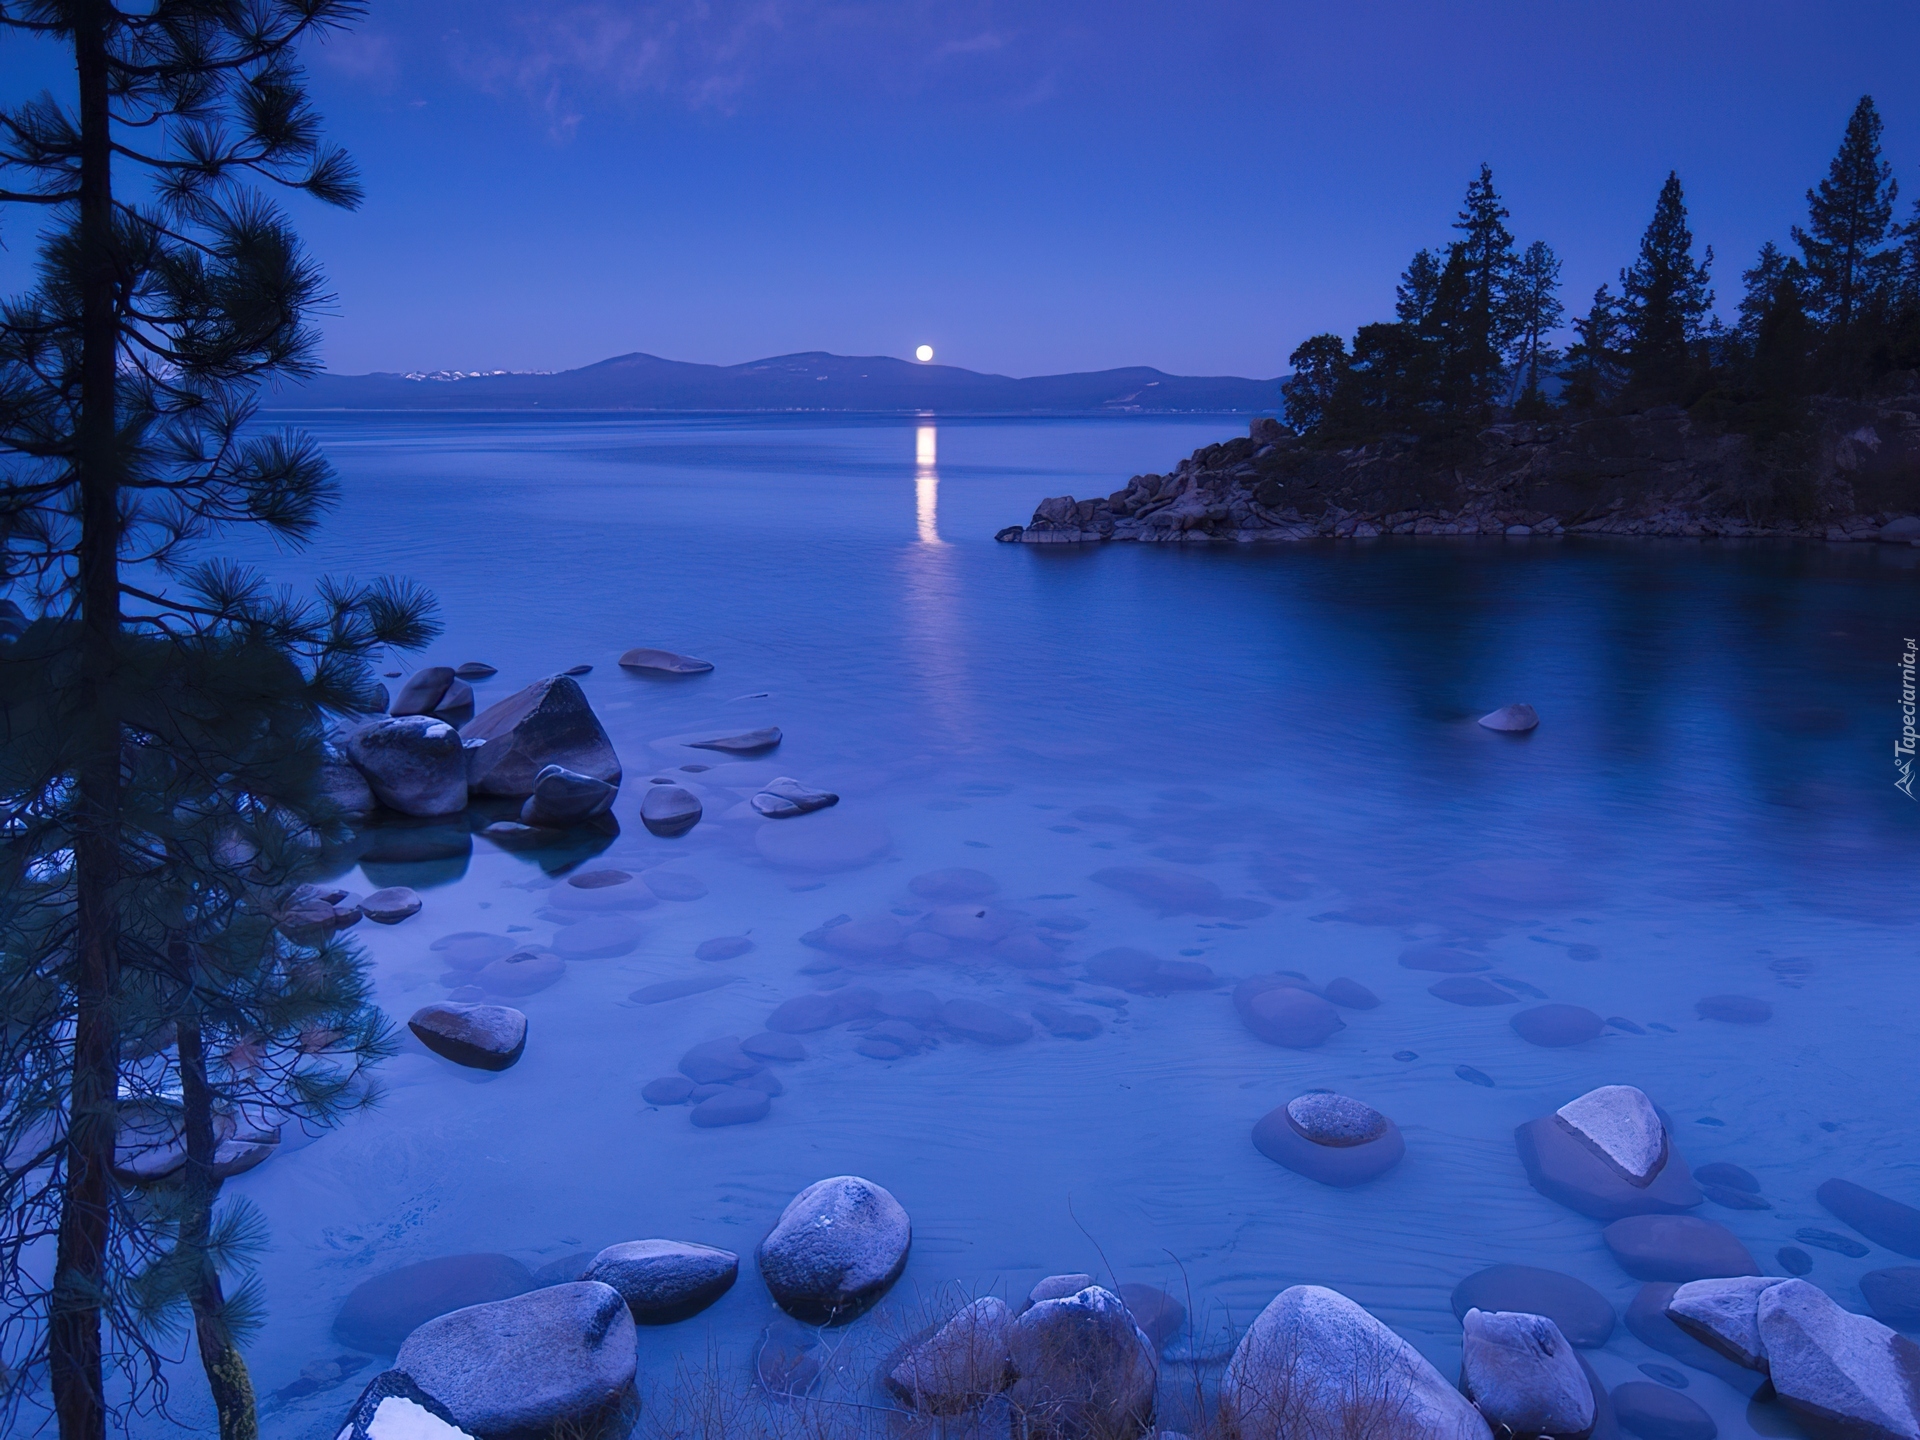 Jezioro, Kamienie, Drzewa, Noc, Tahoe, Kalifornia